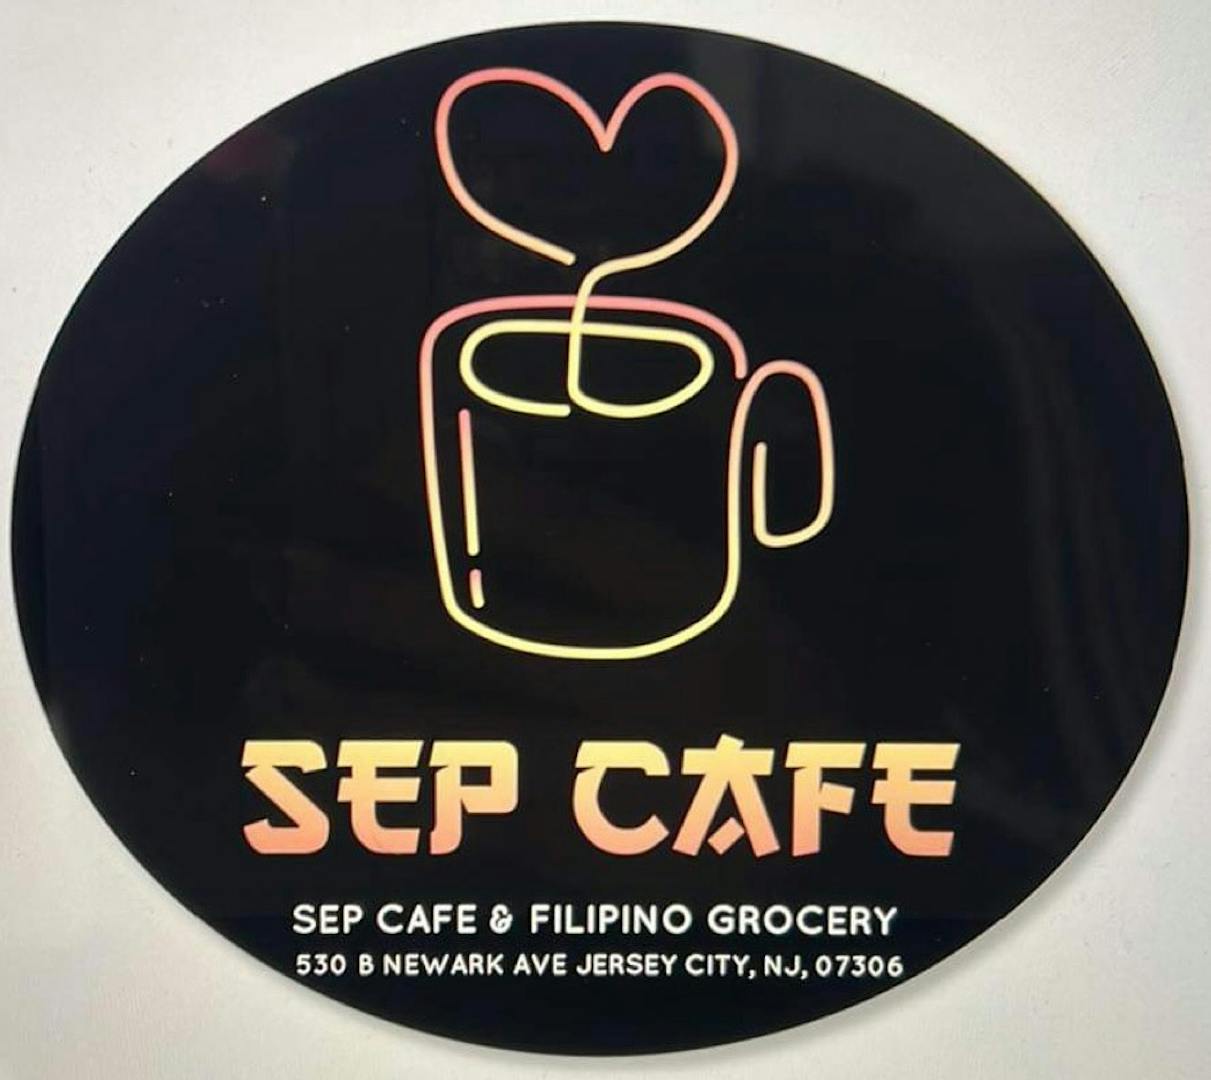 SEP CAFE